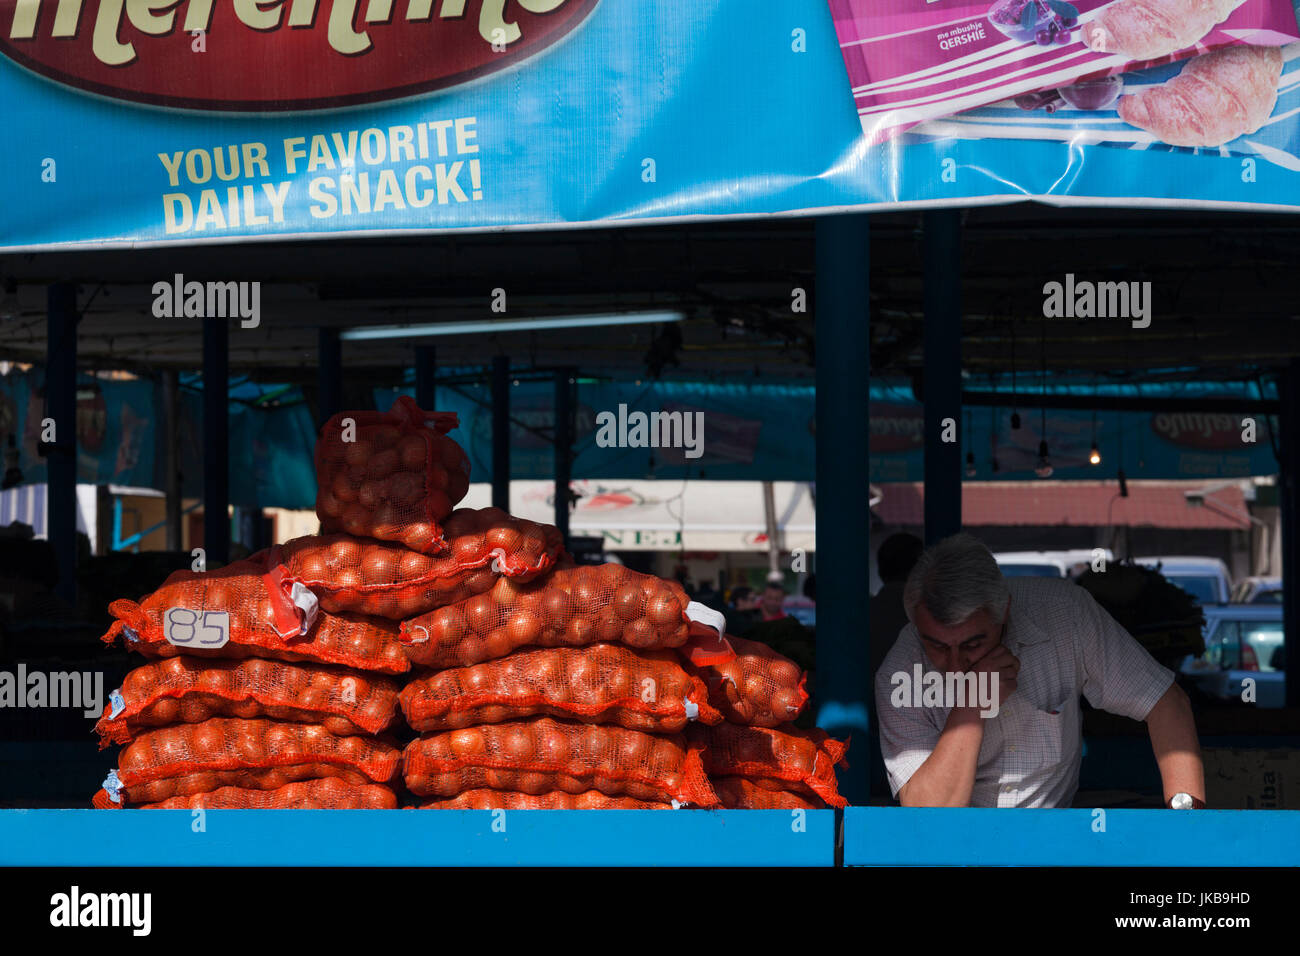 Albania, Tirana, Central Market, onion seller Stock Photo